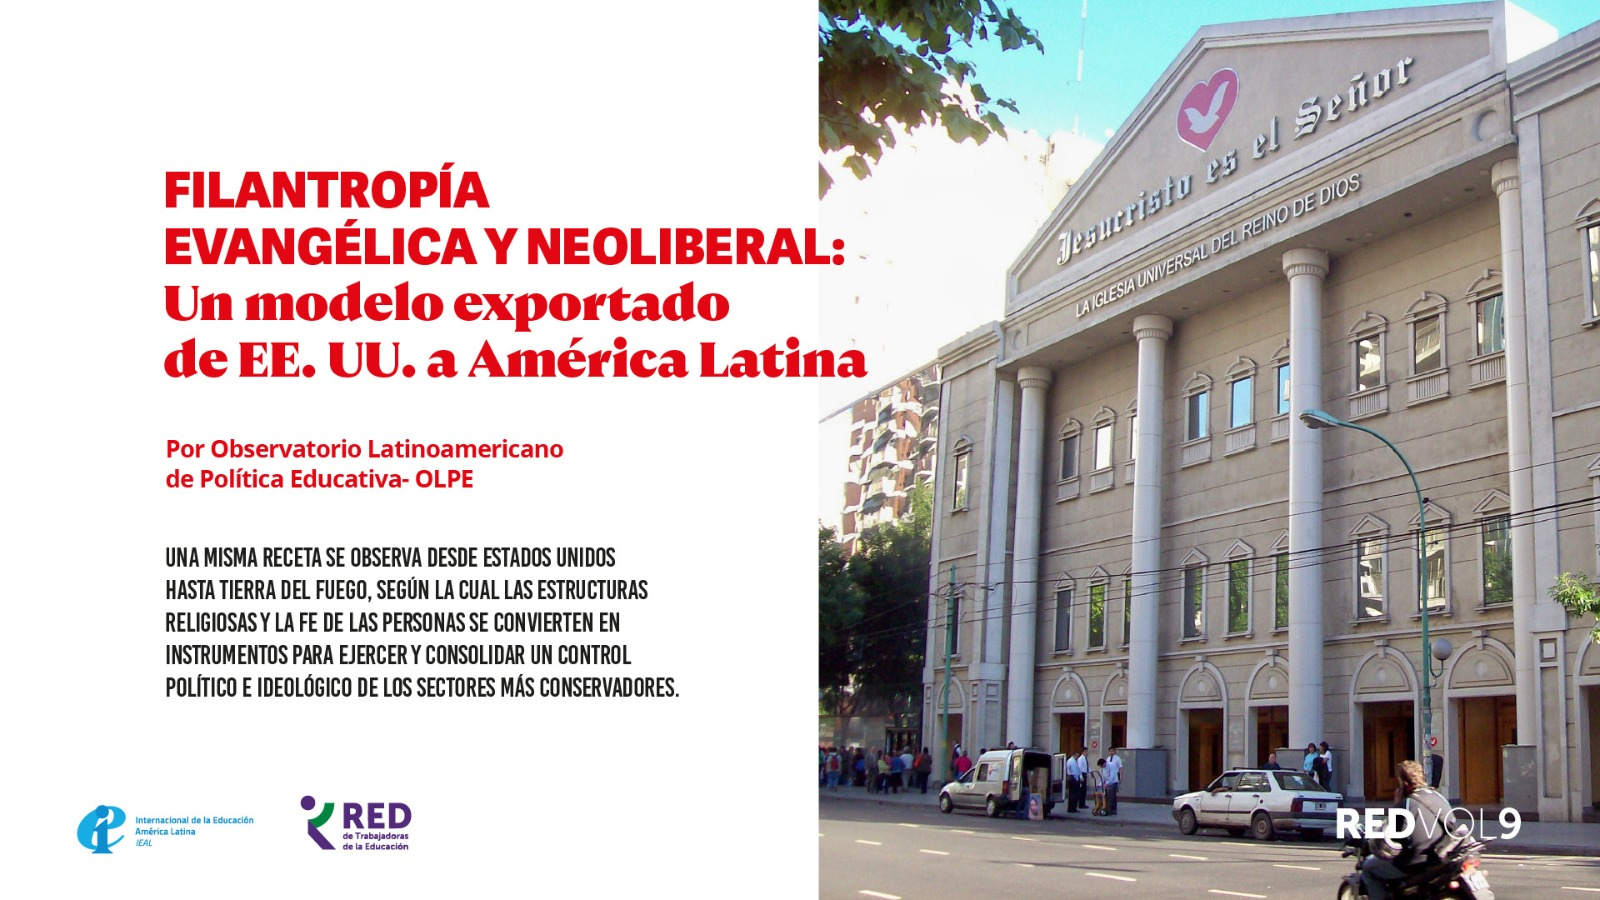 APUNTES SOCIALES | Filantropía evangélica y neoliberal: un modelo exportado de EE. UU. a América Latina 